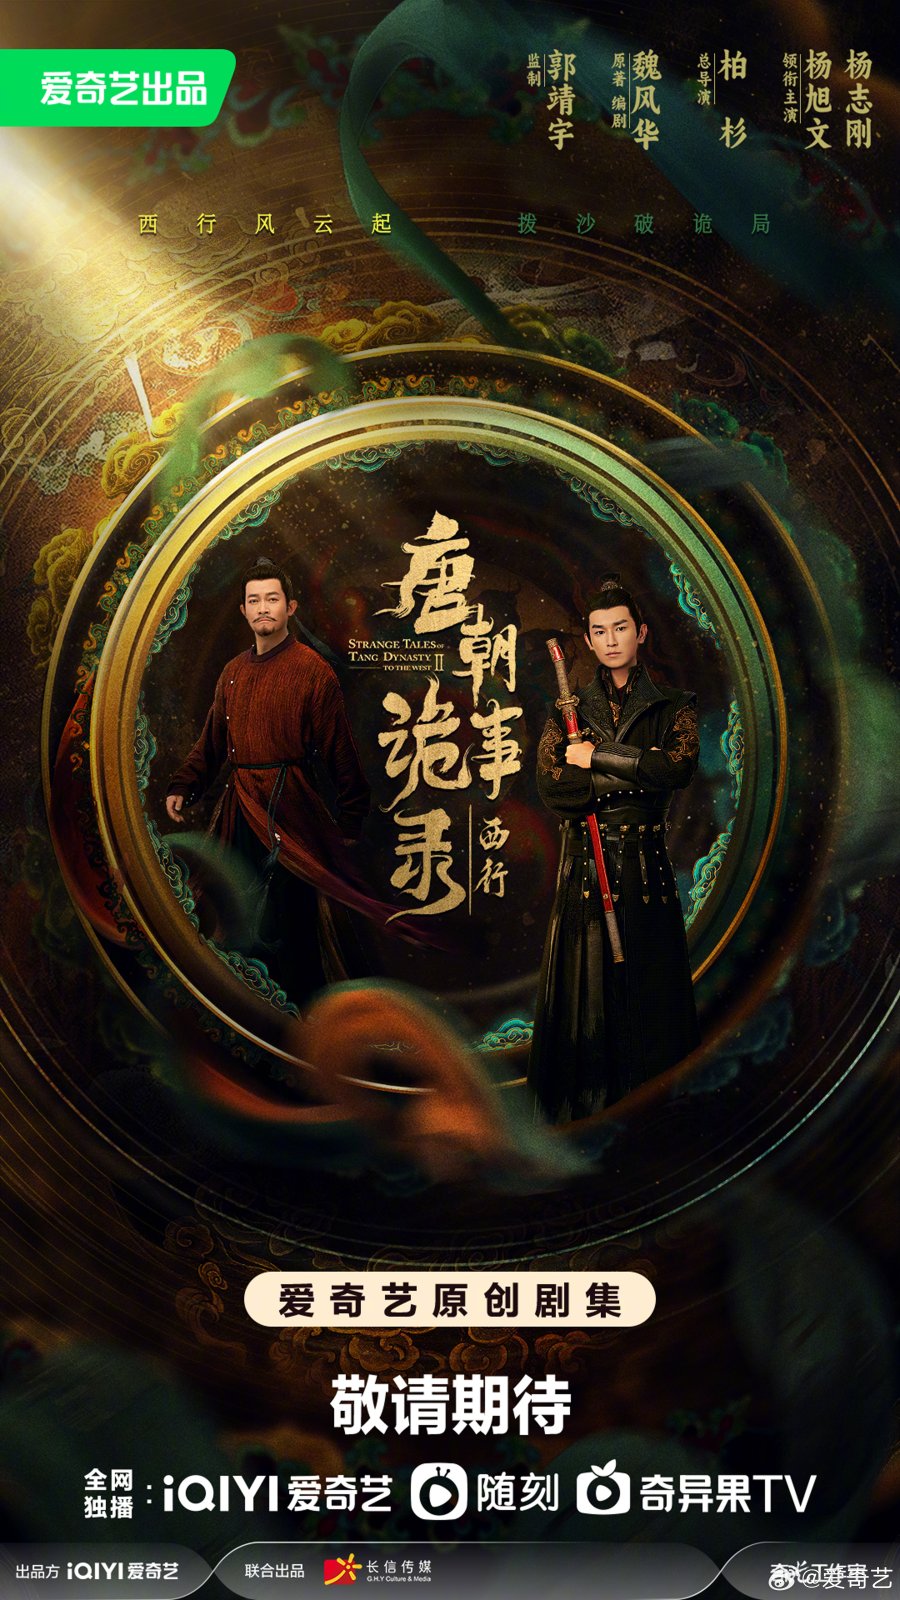 ดูหนังออนไลน์ฟรี ซีรีส์จีน Strange Tales of Tang Dynasty II To the West (2024) ปริศนาลับราชวงศ์ถัง เส้นทางสู่ตะวันตก ซับไทย